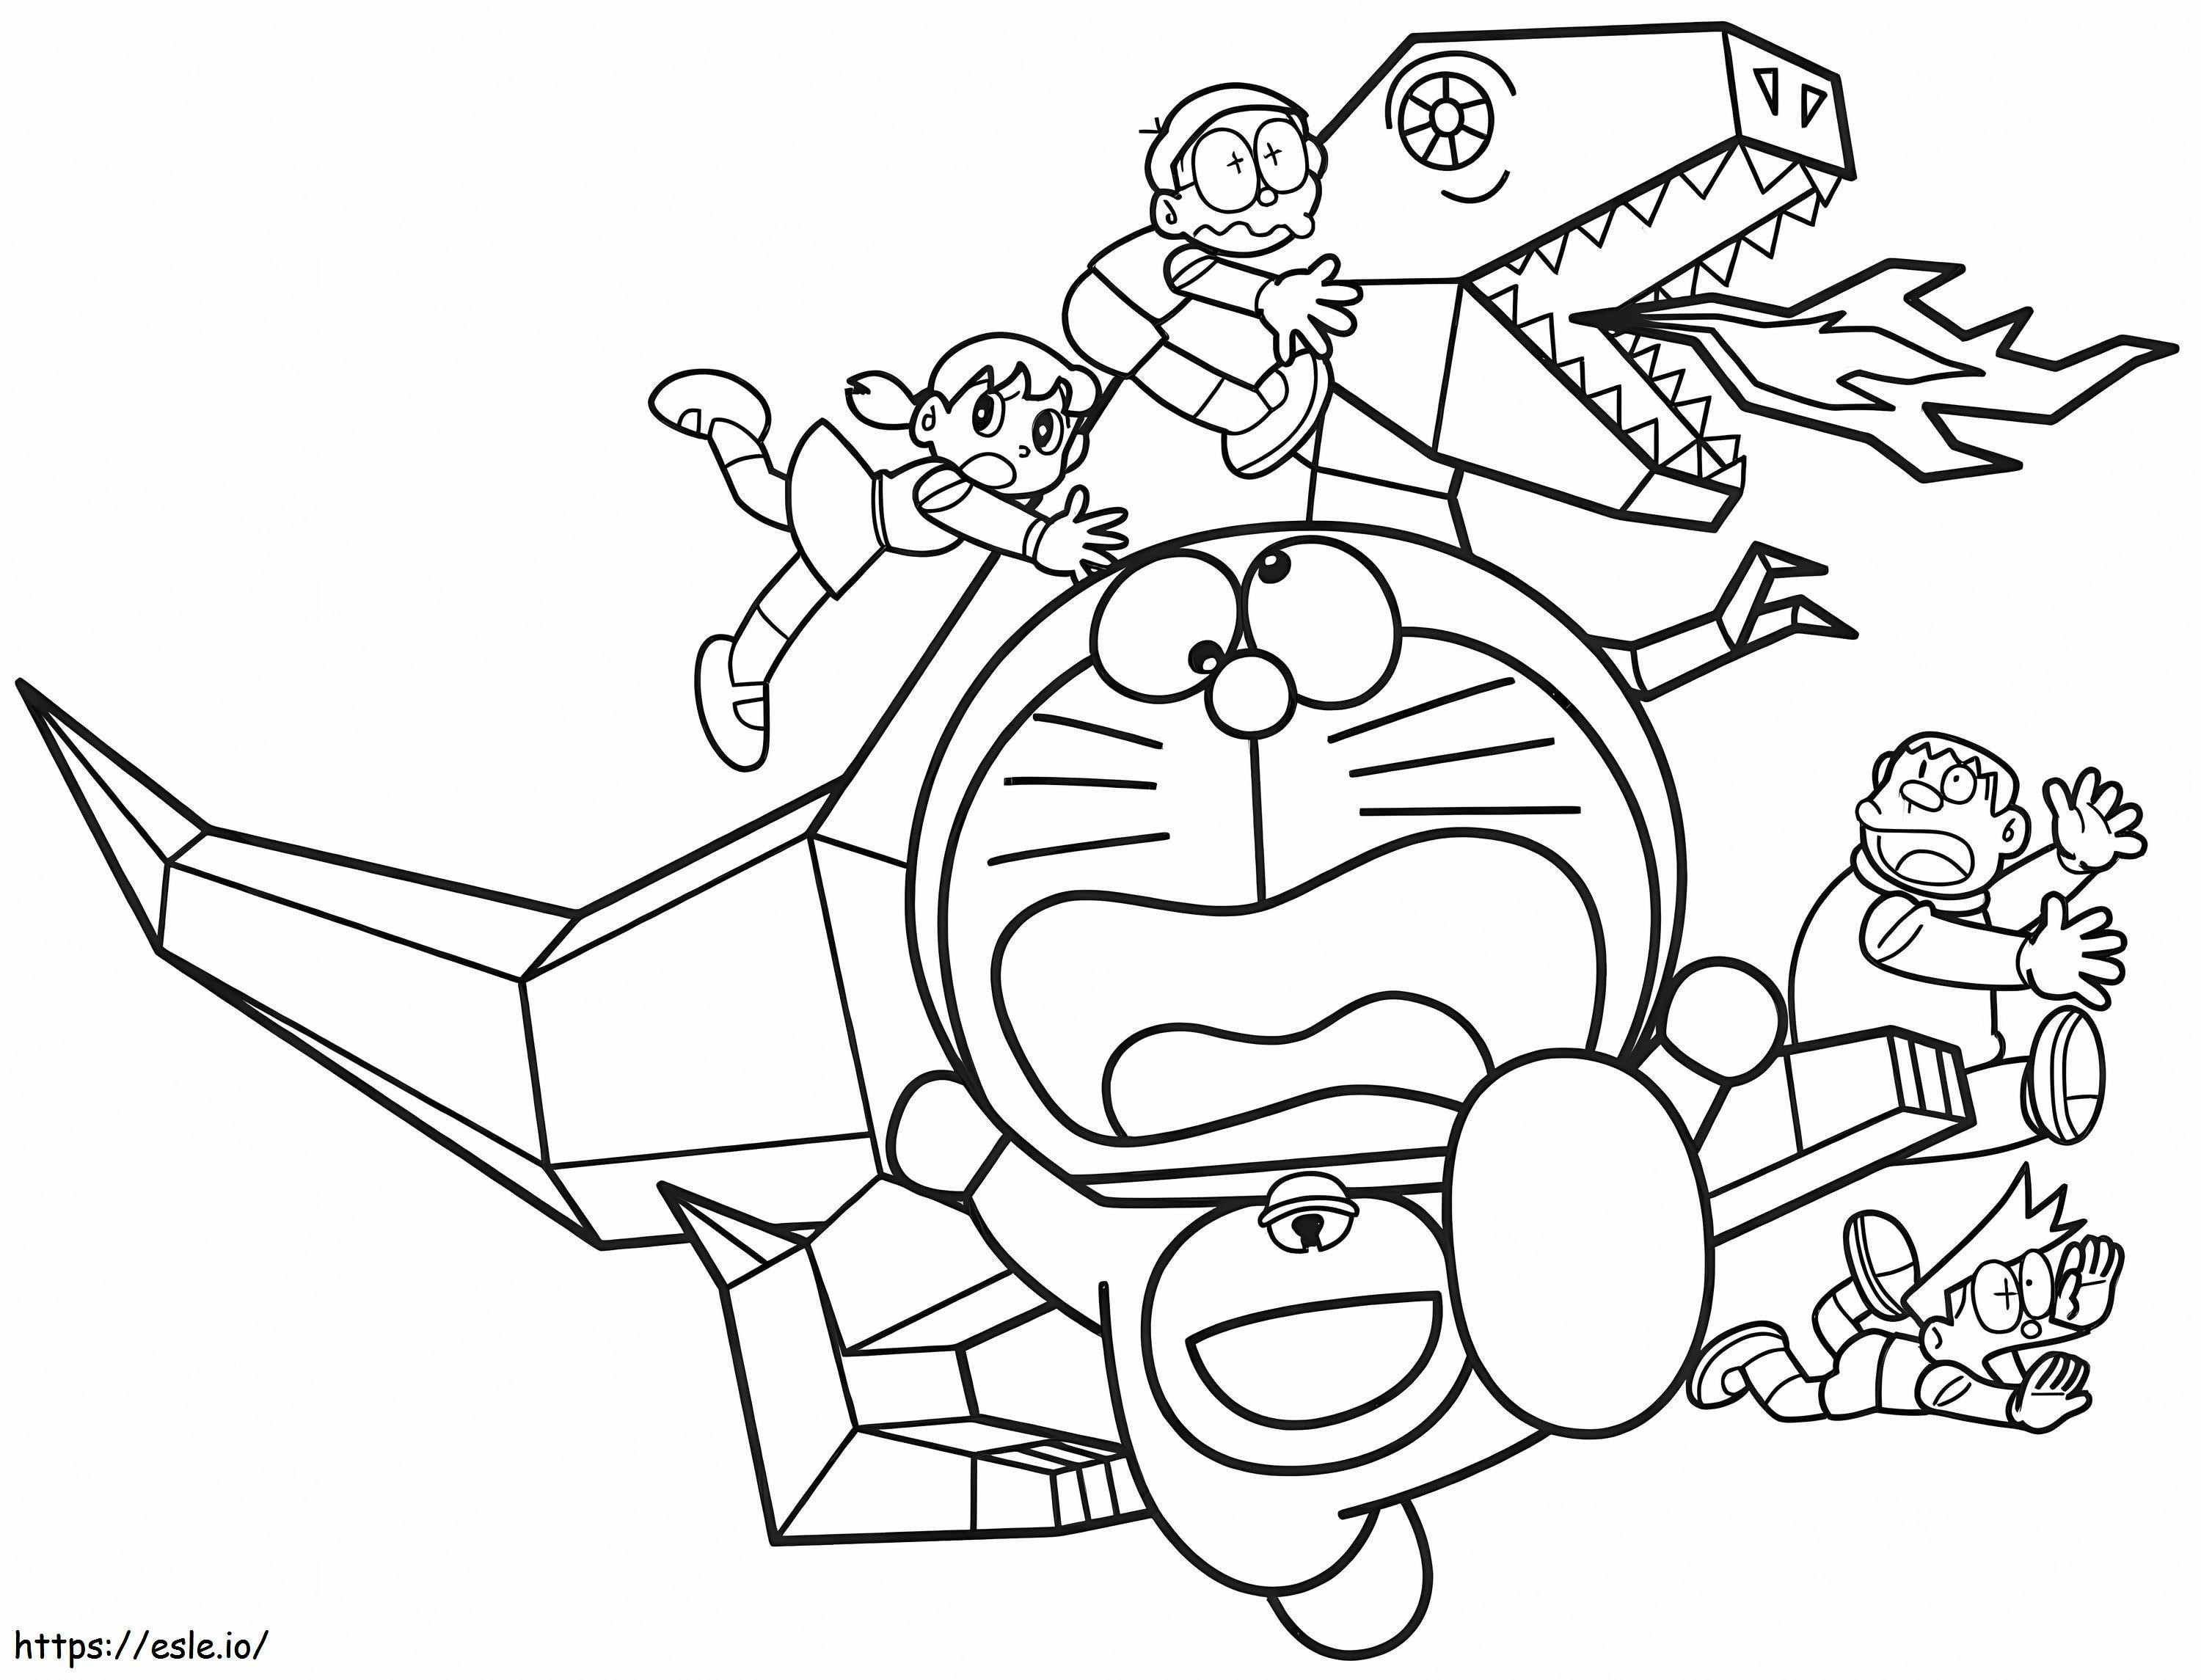 1540782387 Kreskówka Doraemon i przyjaciele Amp do druku kolorowanka